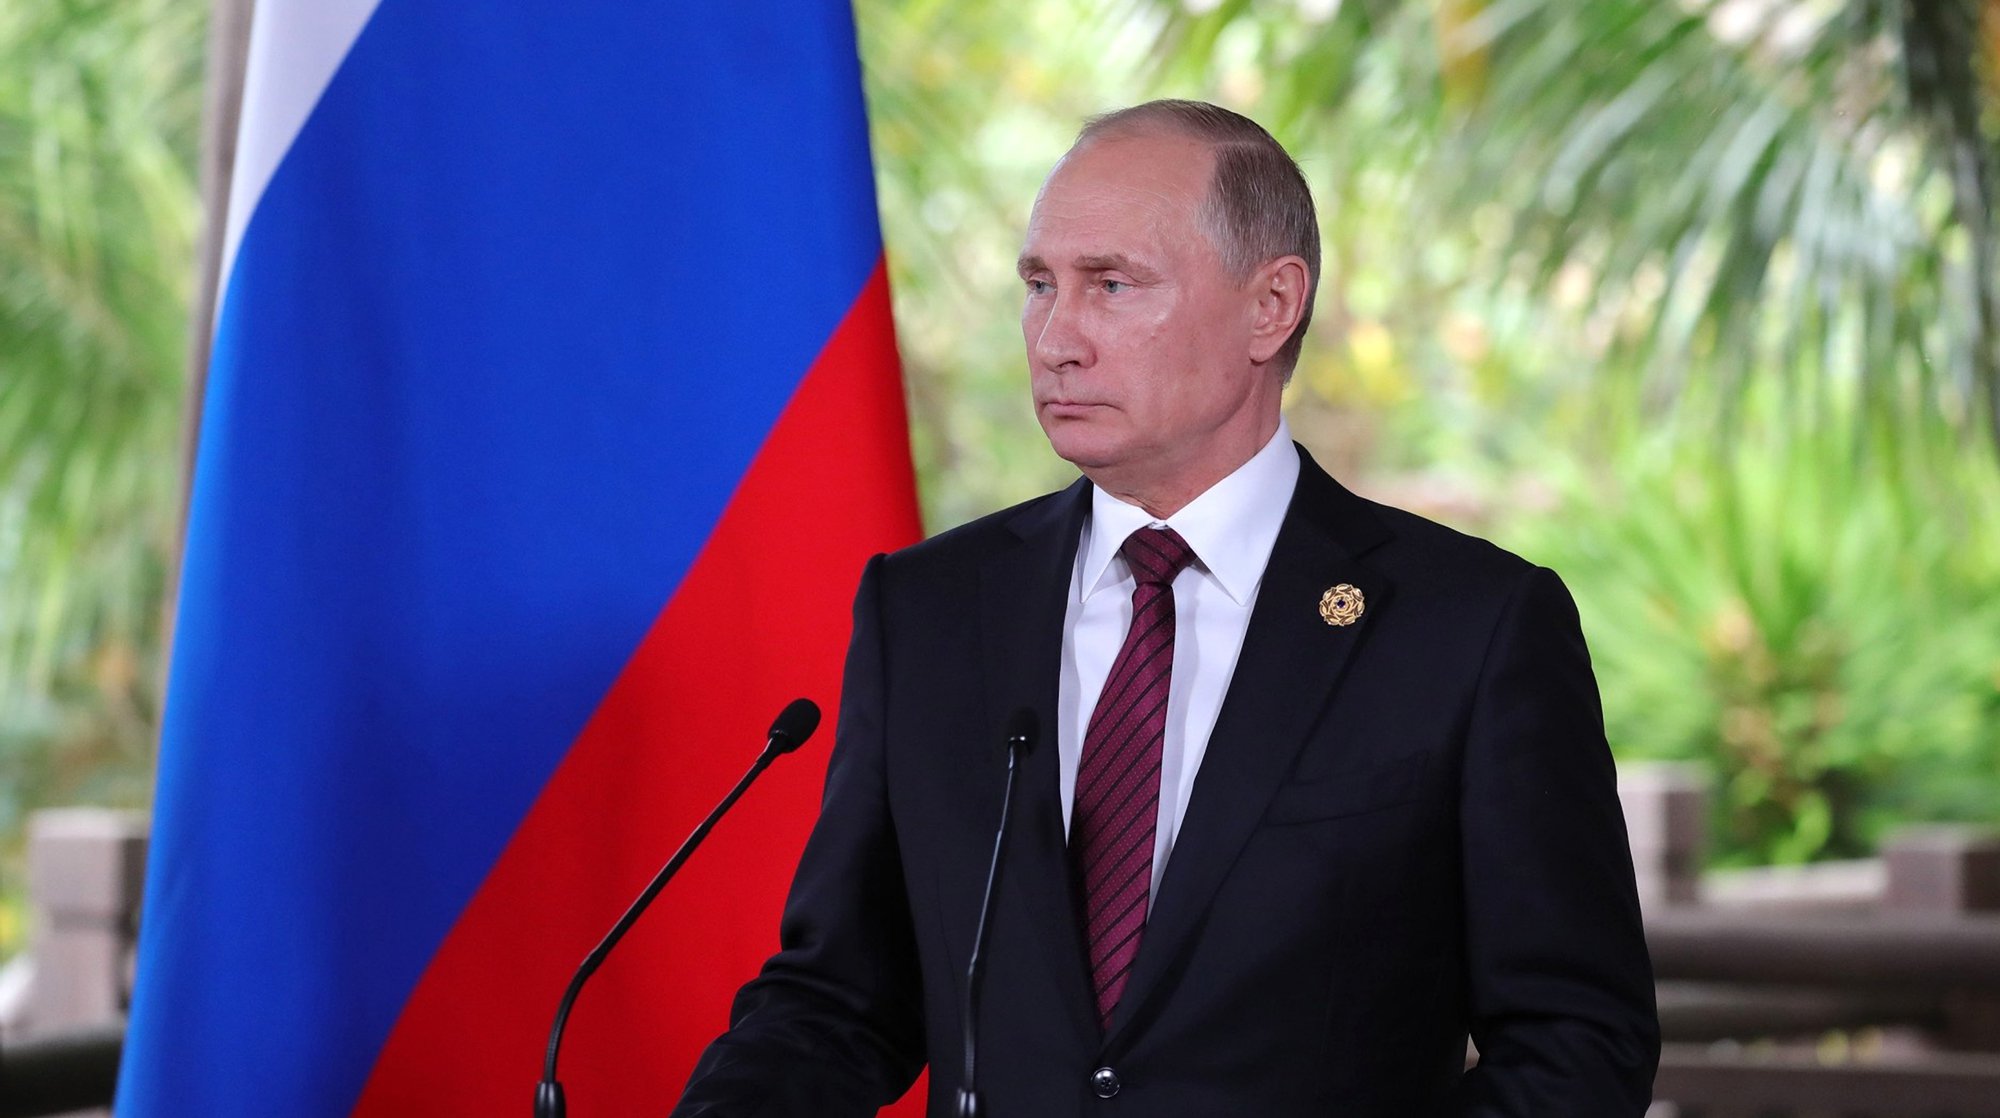 Dailystorm - Политологи развенчали политическую «интригу» о выдвижении Путина на выборы